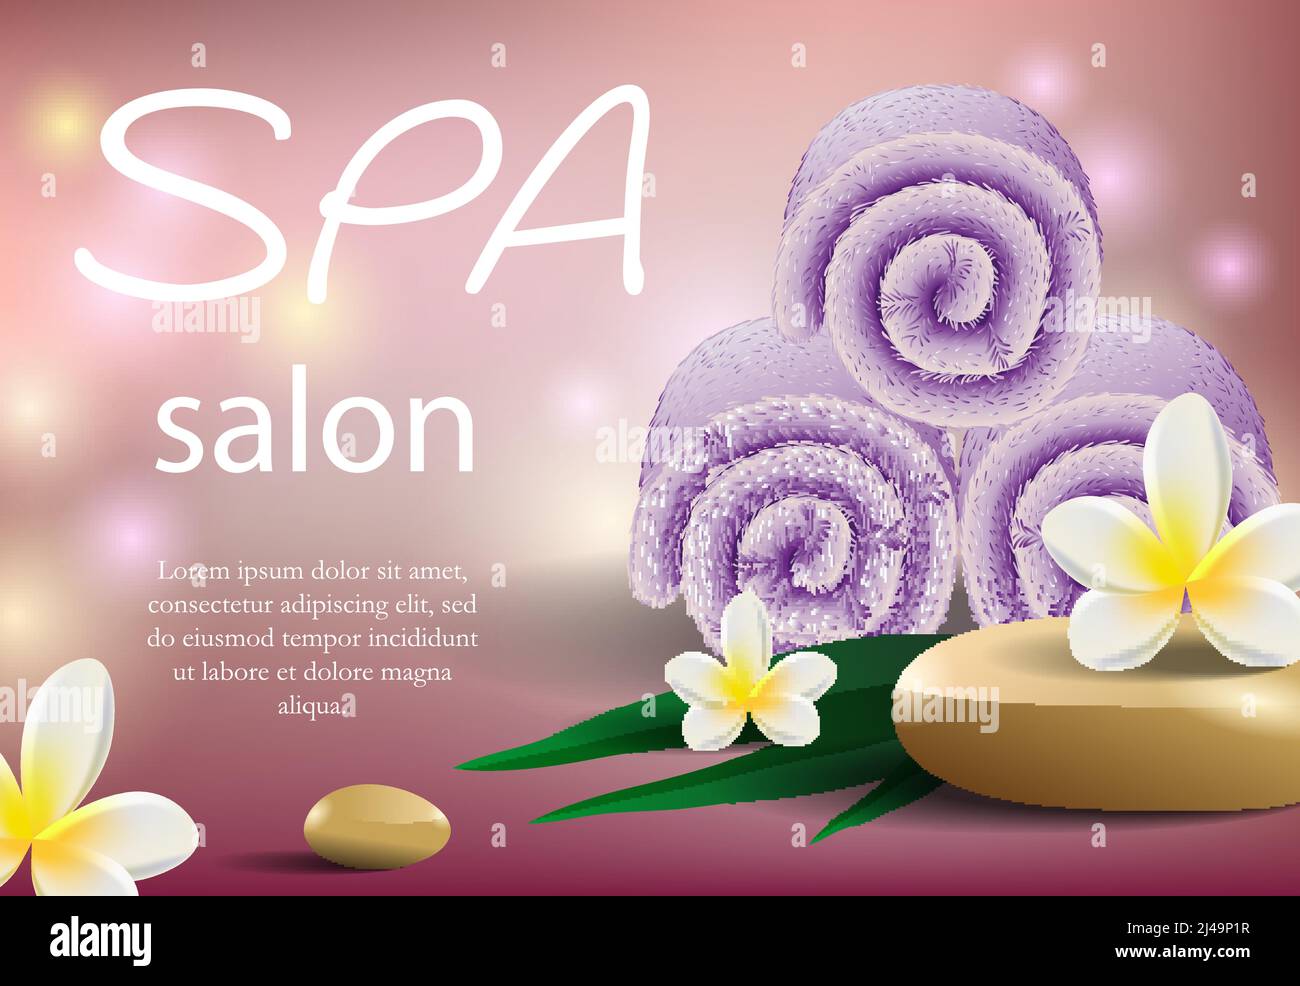 Schriftzug im Spa-Salon mit violetten Handtüchern. Realistischer, weicher Handtuchstapel und tropische Blumen auf rosa Hintergrund mit Lichtern. Abbildung mit Beschriftung Dose Stock Vektor